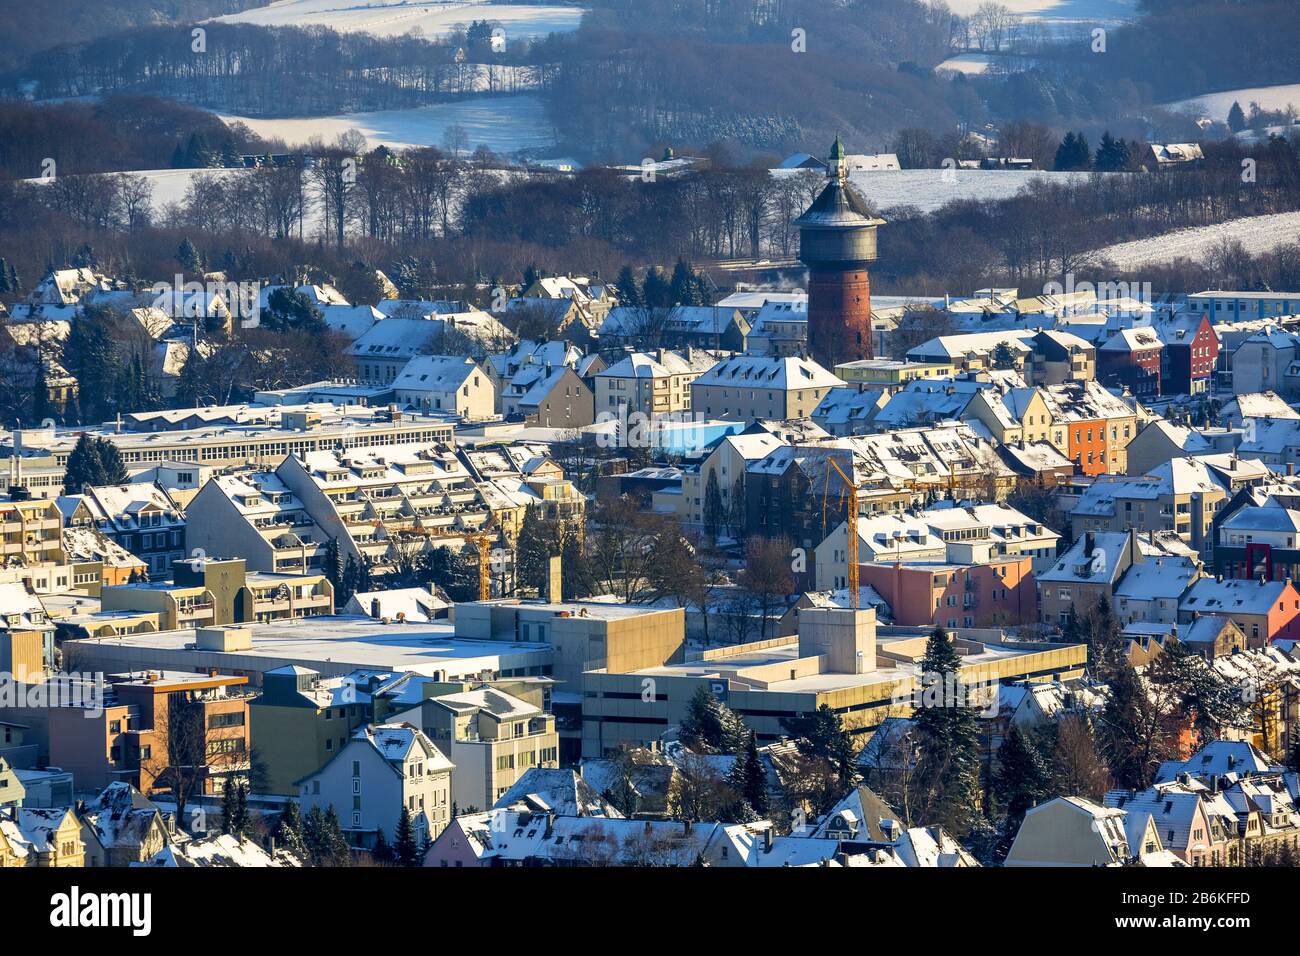 , Old Water Tower en Steeger Street en Velbert en invierno, vista aérea, 28.12.2014, Alemania, Renania del Norte-Westfalia, Bergisches Land, Velbert Foto de stock